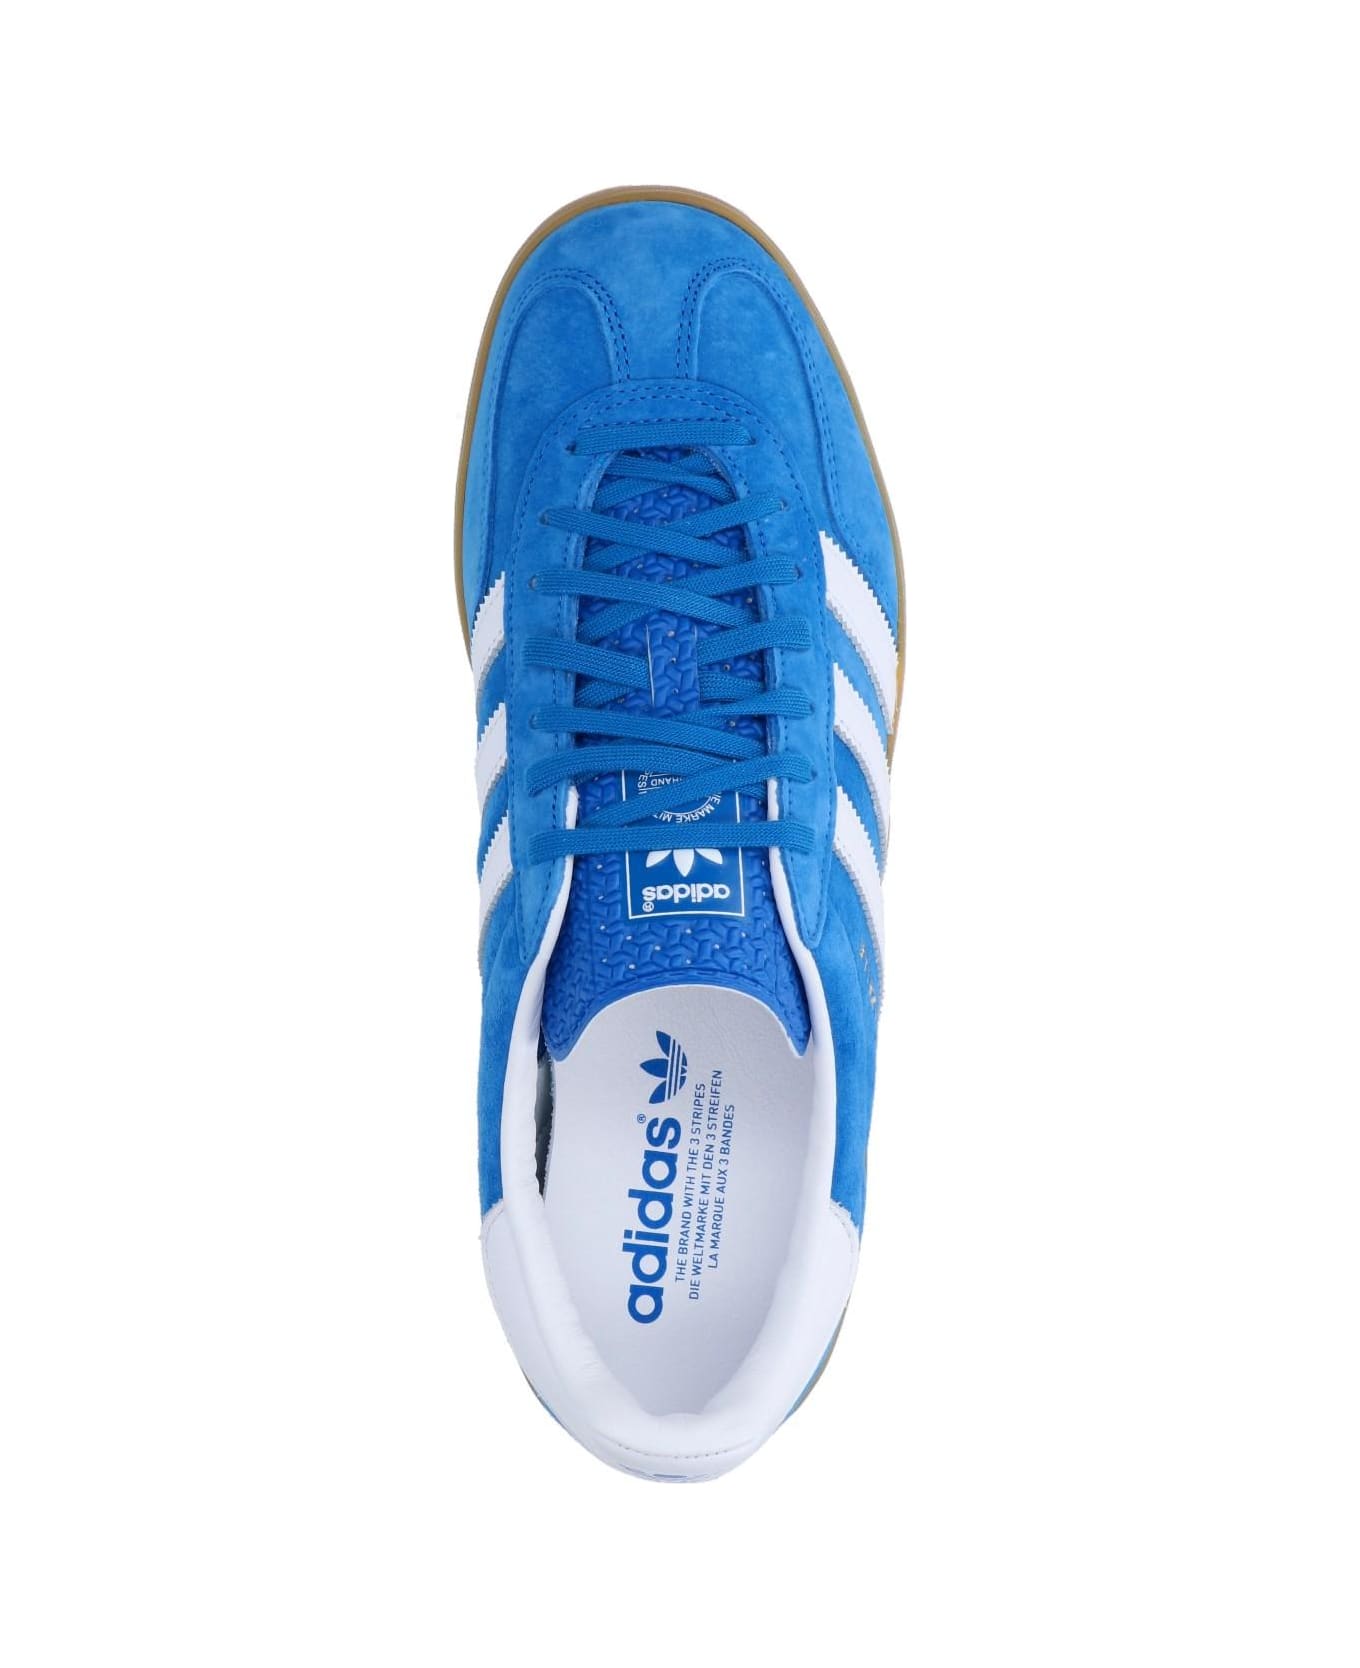 Adidas Originals 'gazelle Indoor' Sneakers - Blubir/ftwwht/blubir